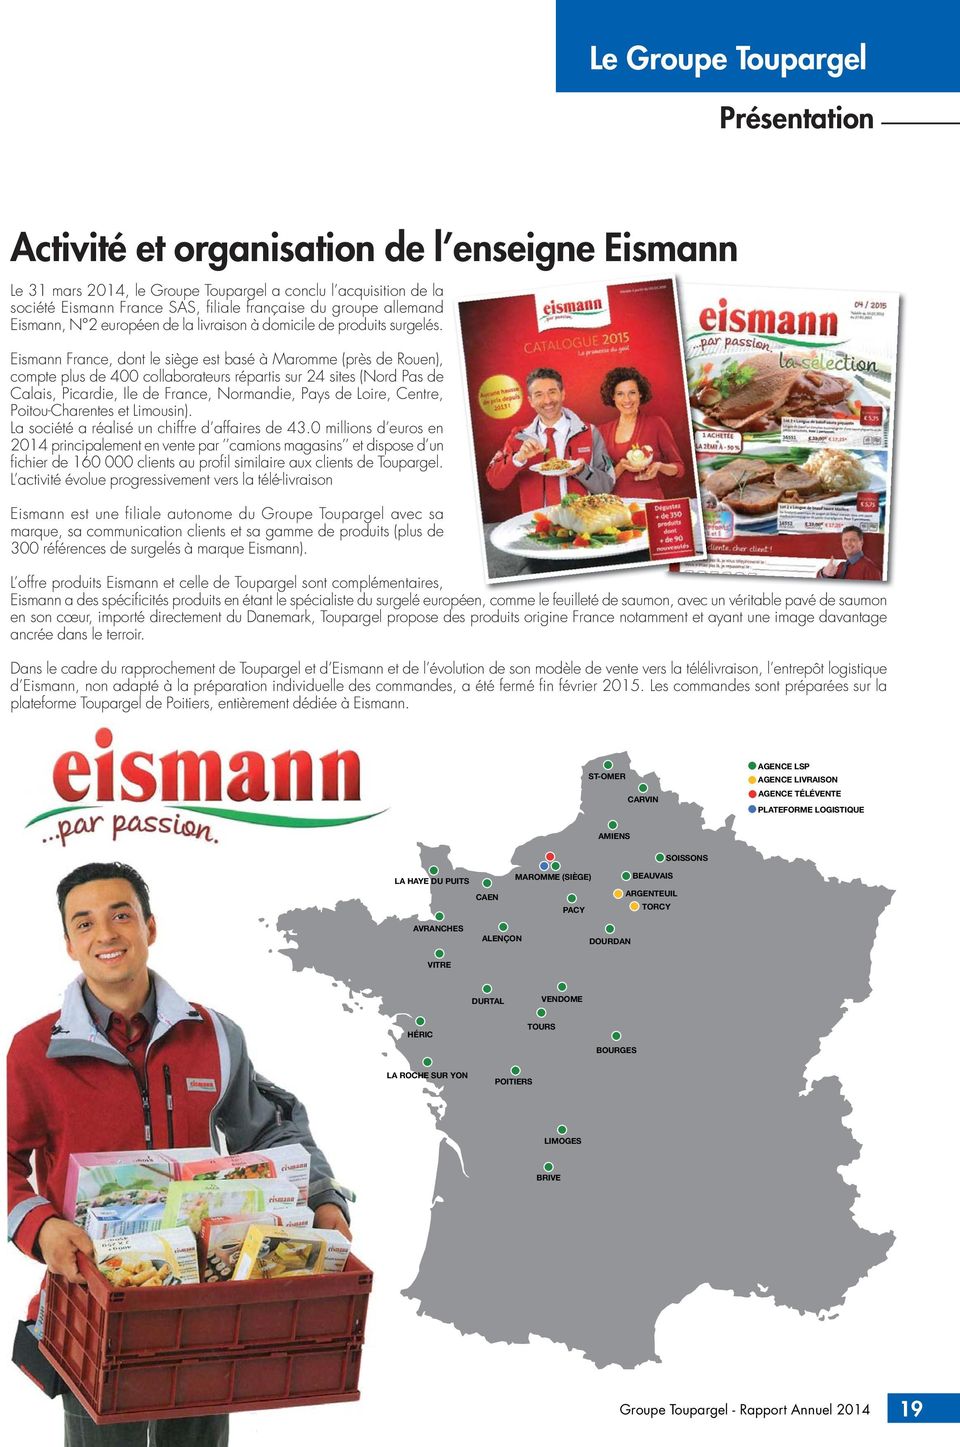 Eismann France, dont le siège est basé à Maromme (près de Rouen), compte plus de 400 collaborateurs répartis sur 24 sites (Nord Pas de Calais, Picardie, Ile de France, Normandie, Pays de Loire,